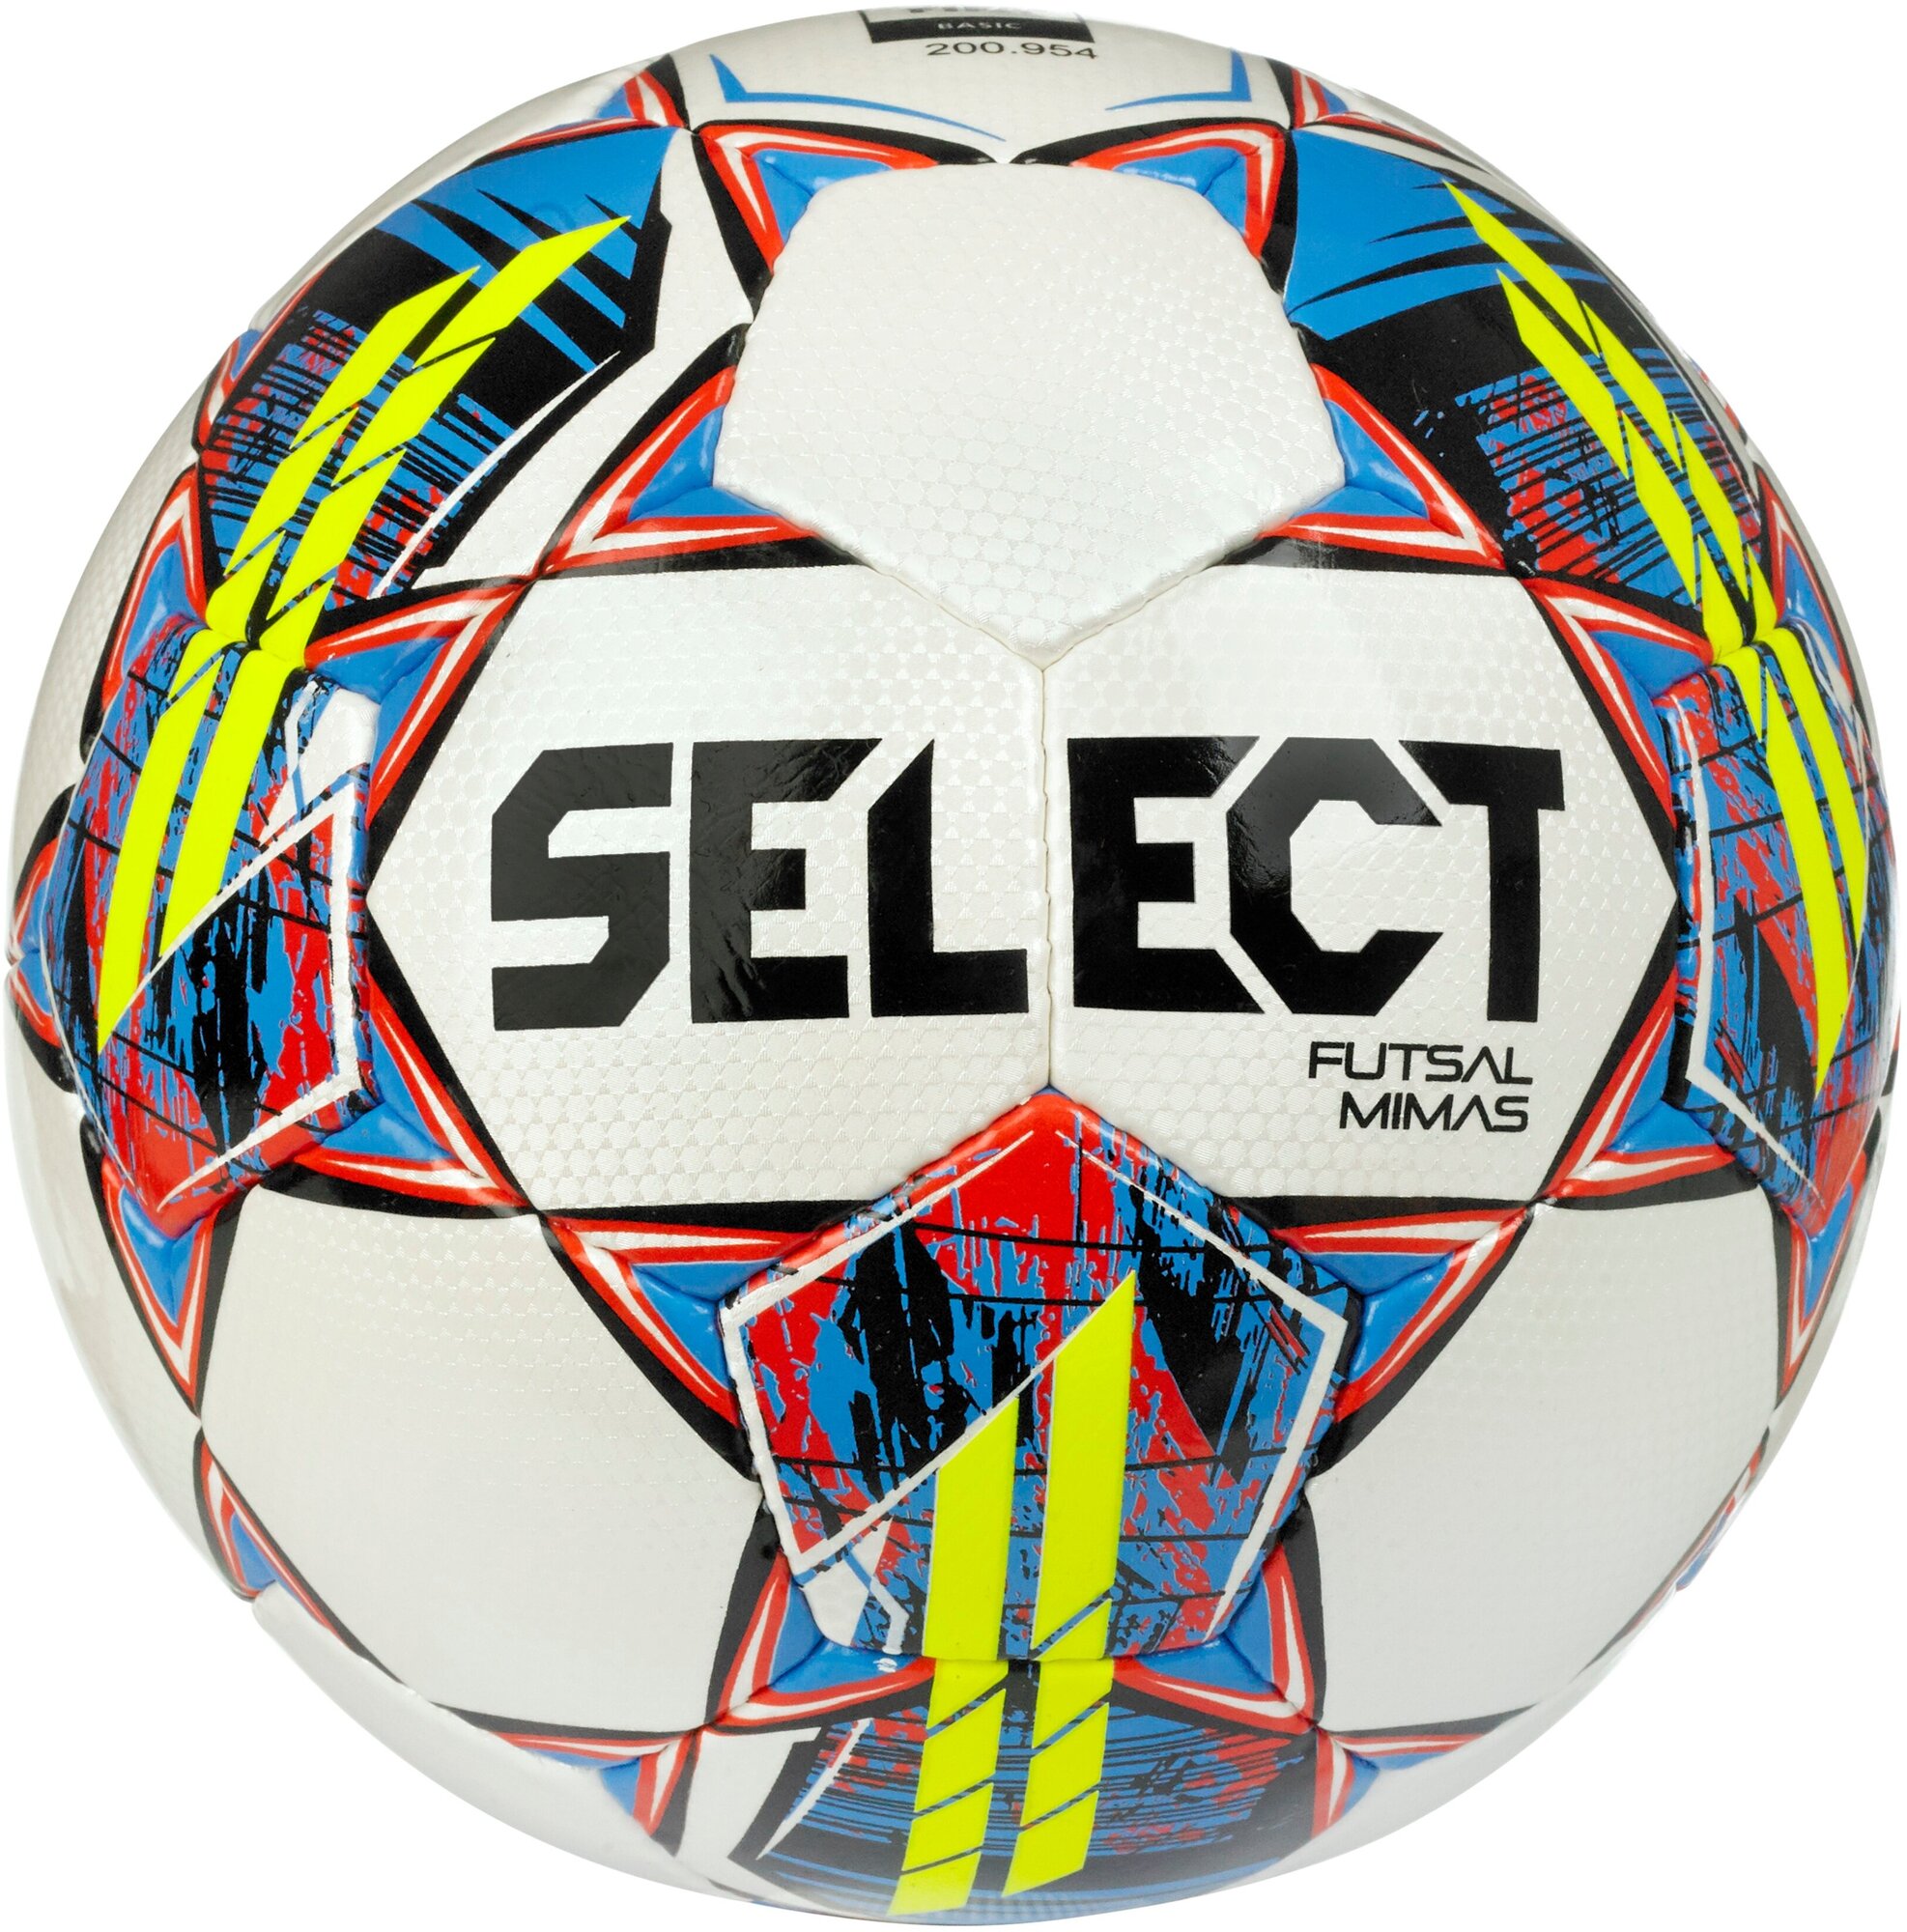 Мяч для мини-футбола (мяч футзальный) Select Futsal Mimas FIFA BASIC